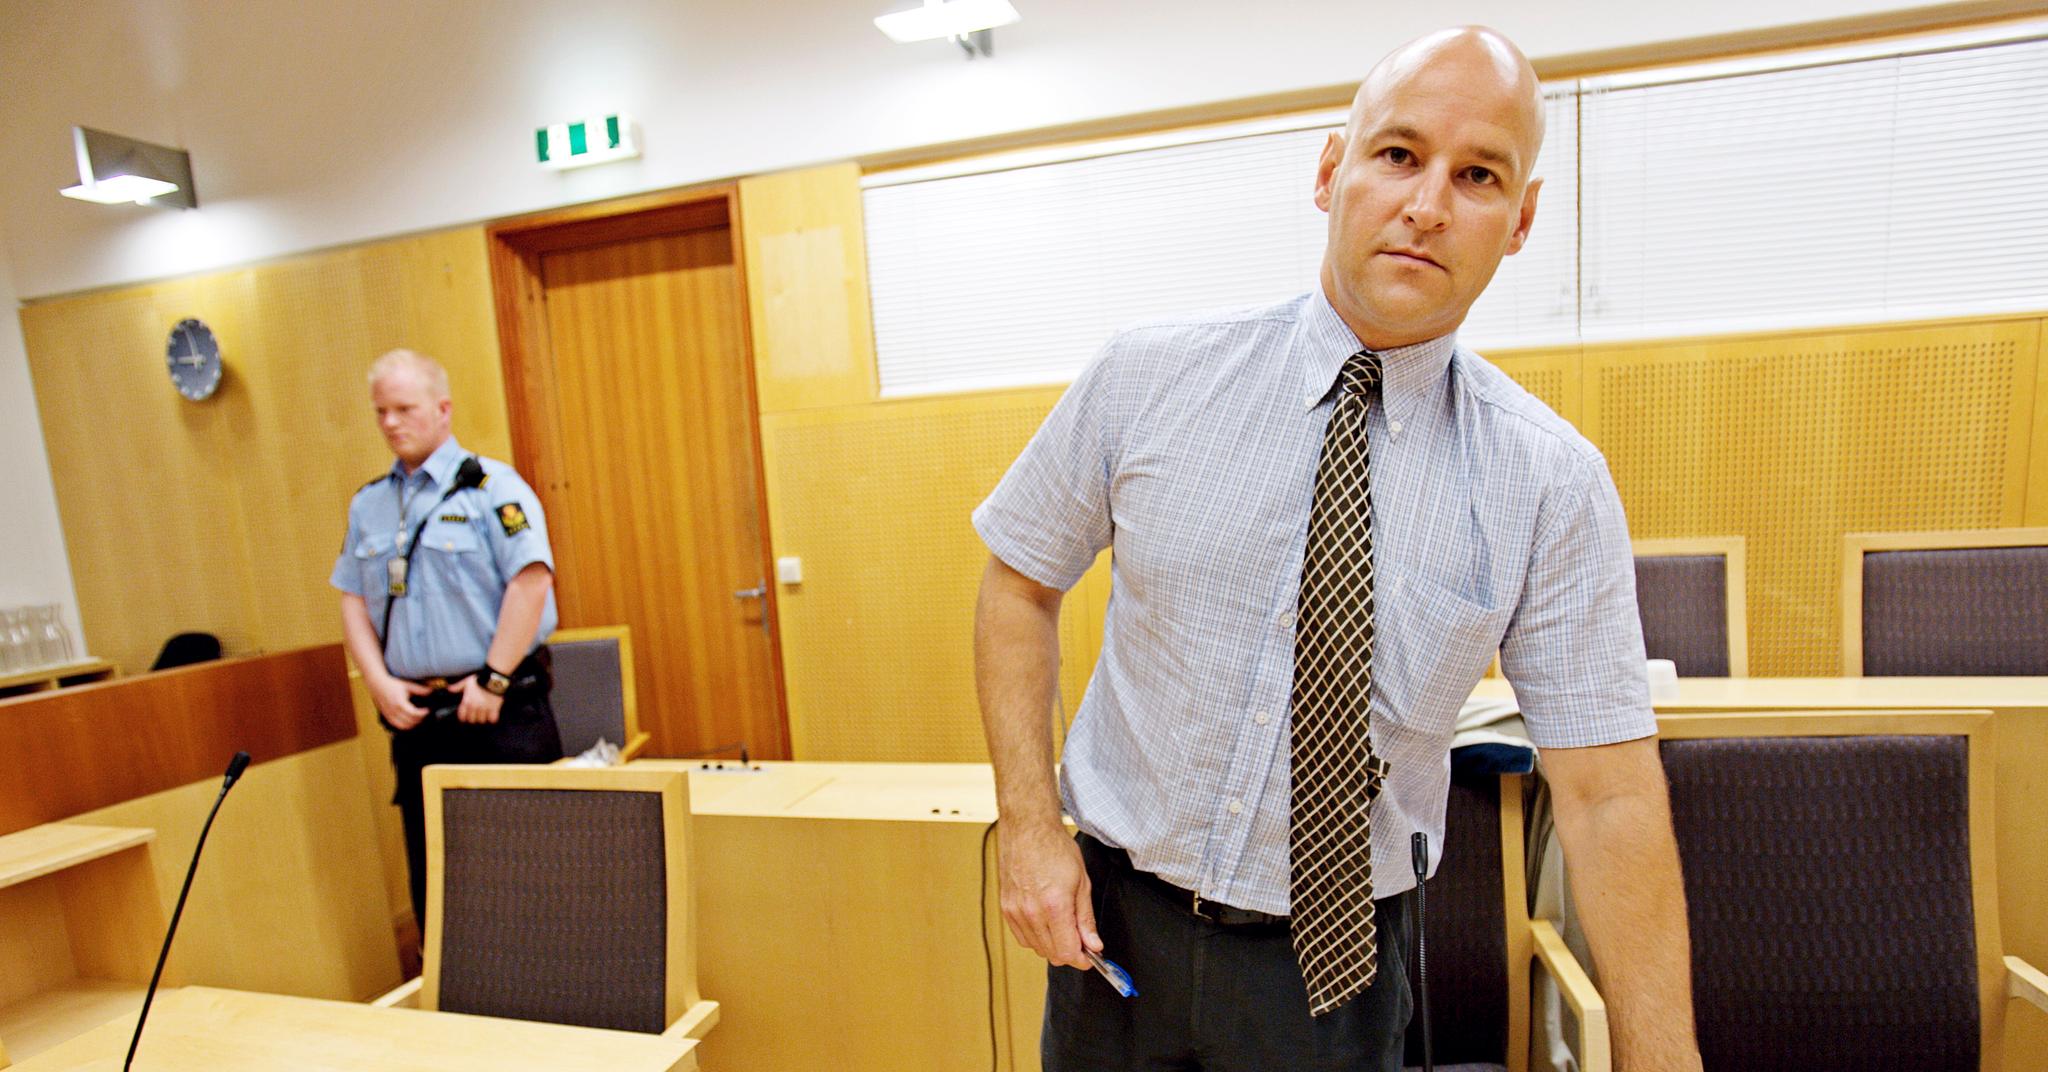  – Alle saker som Eirik Jensen har arbeidet med, må ettergås. Politiet må selv undersøke disse sakene, sier advokat Vidar Lind Iversen. Han stiller spørsmål om en sentral politimann som er dømt for korrupsjon og kriminalitet i seg selv kan gi grunnlag for gjenopptagelse.  